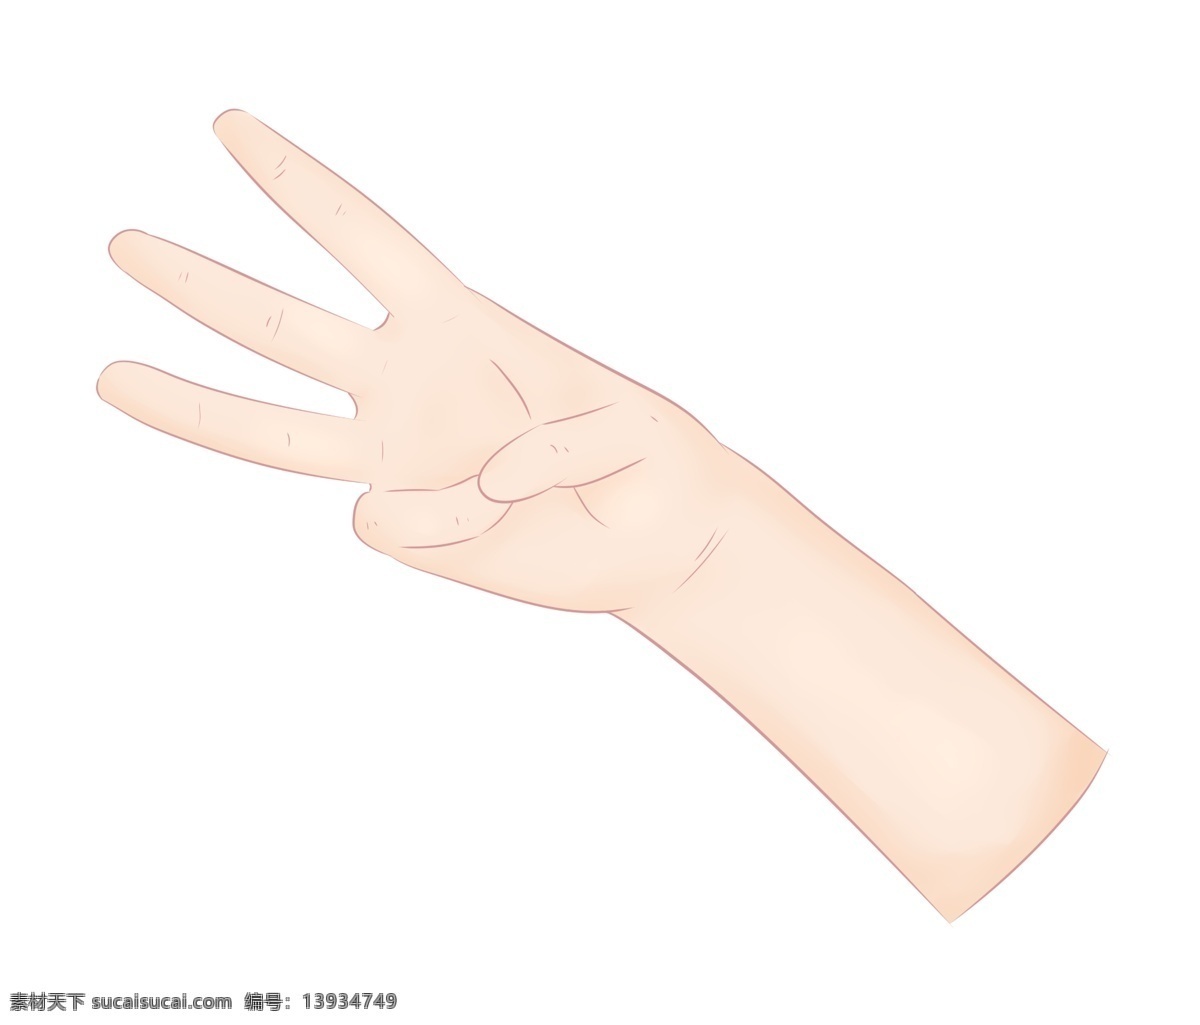 数字 手势 插画 数字3的手势 卡通插画 手势的插画 肢体语言 哑语 摆姿势 手语 优美的手势